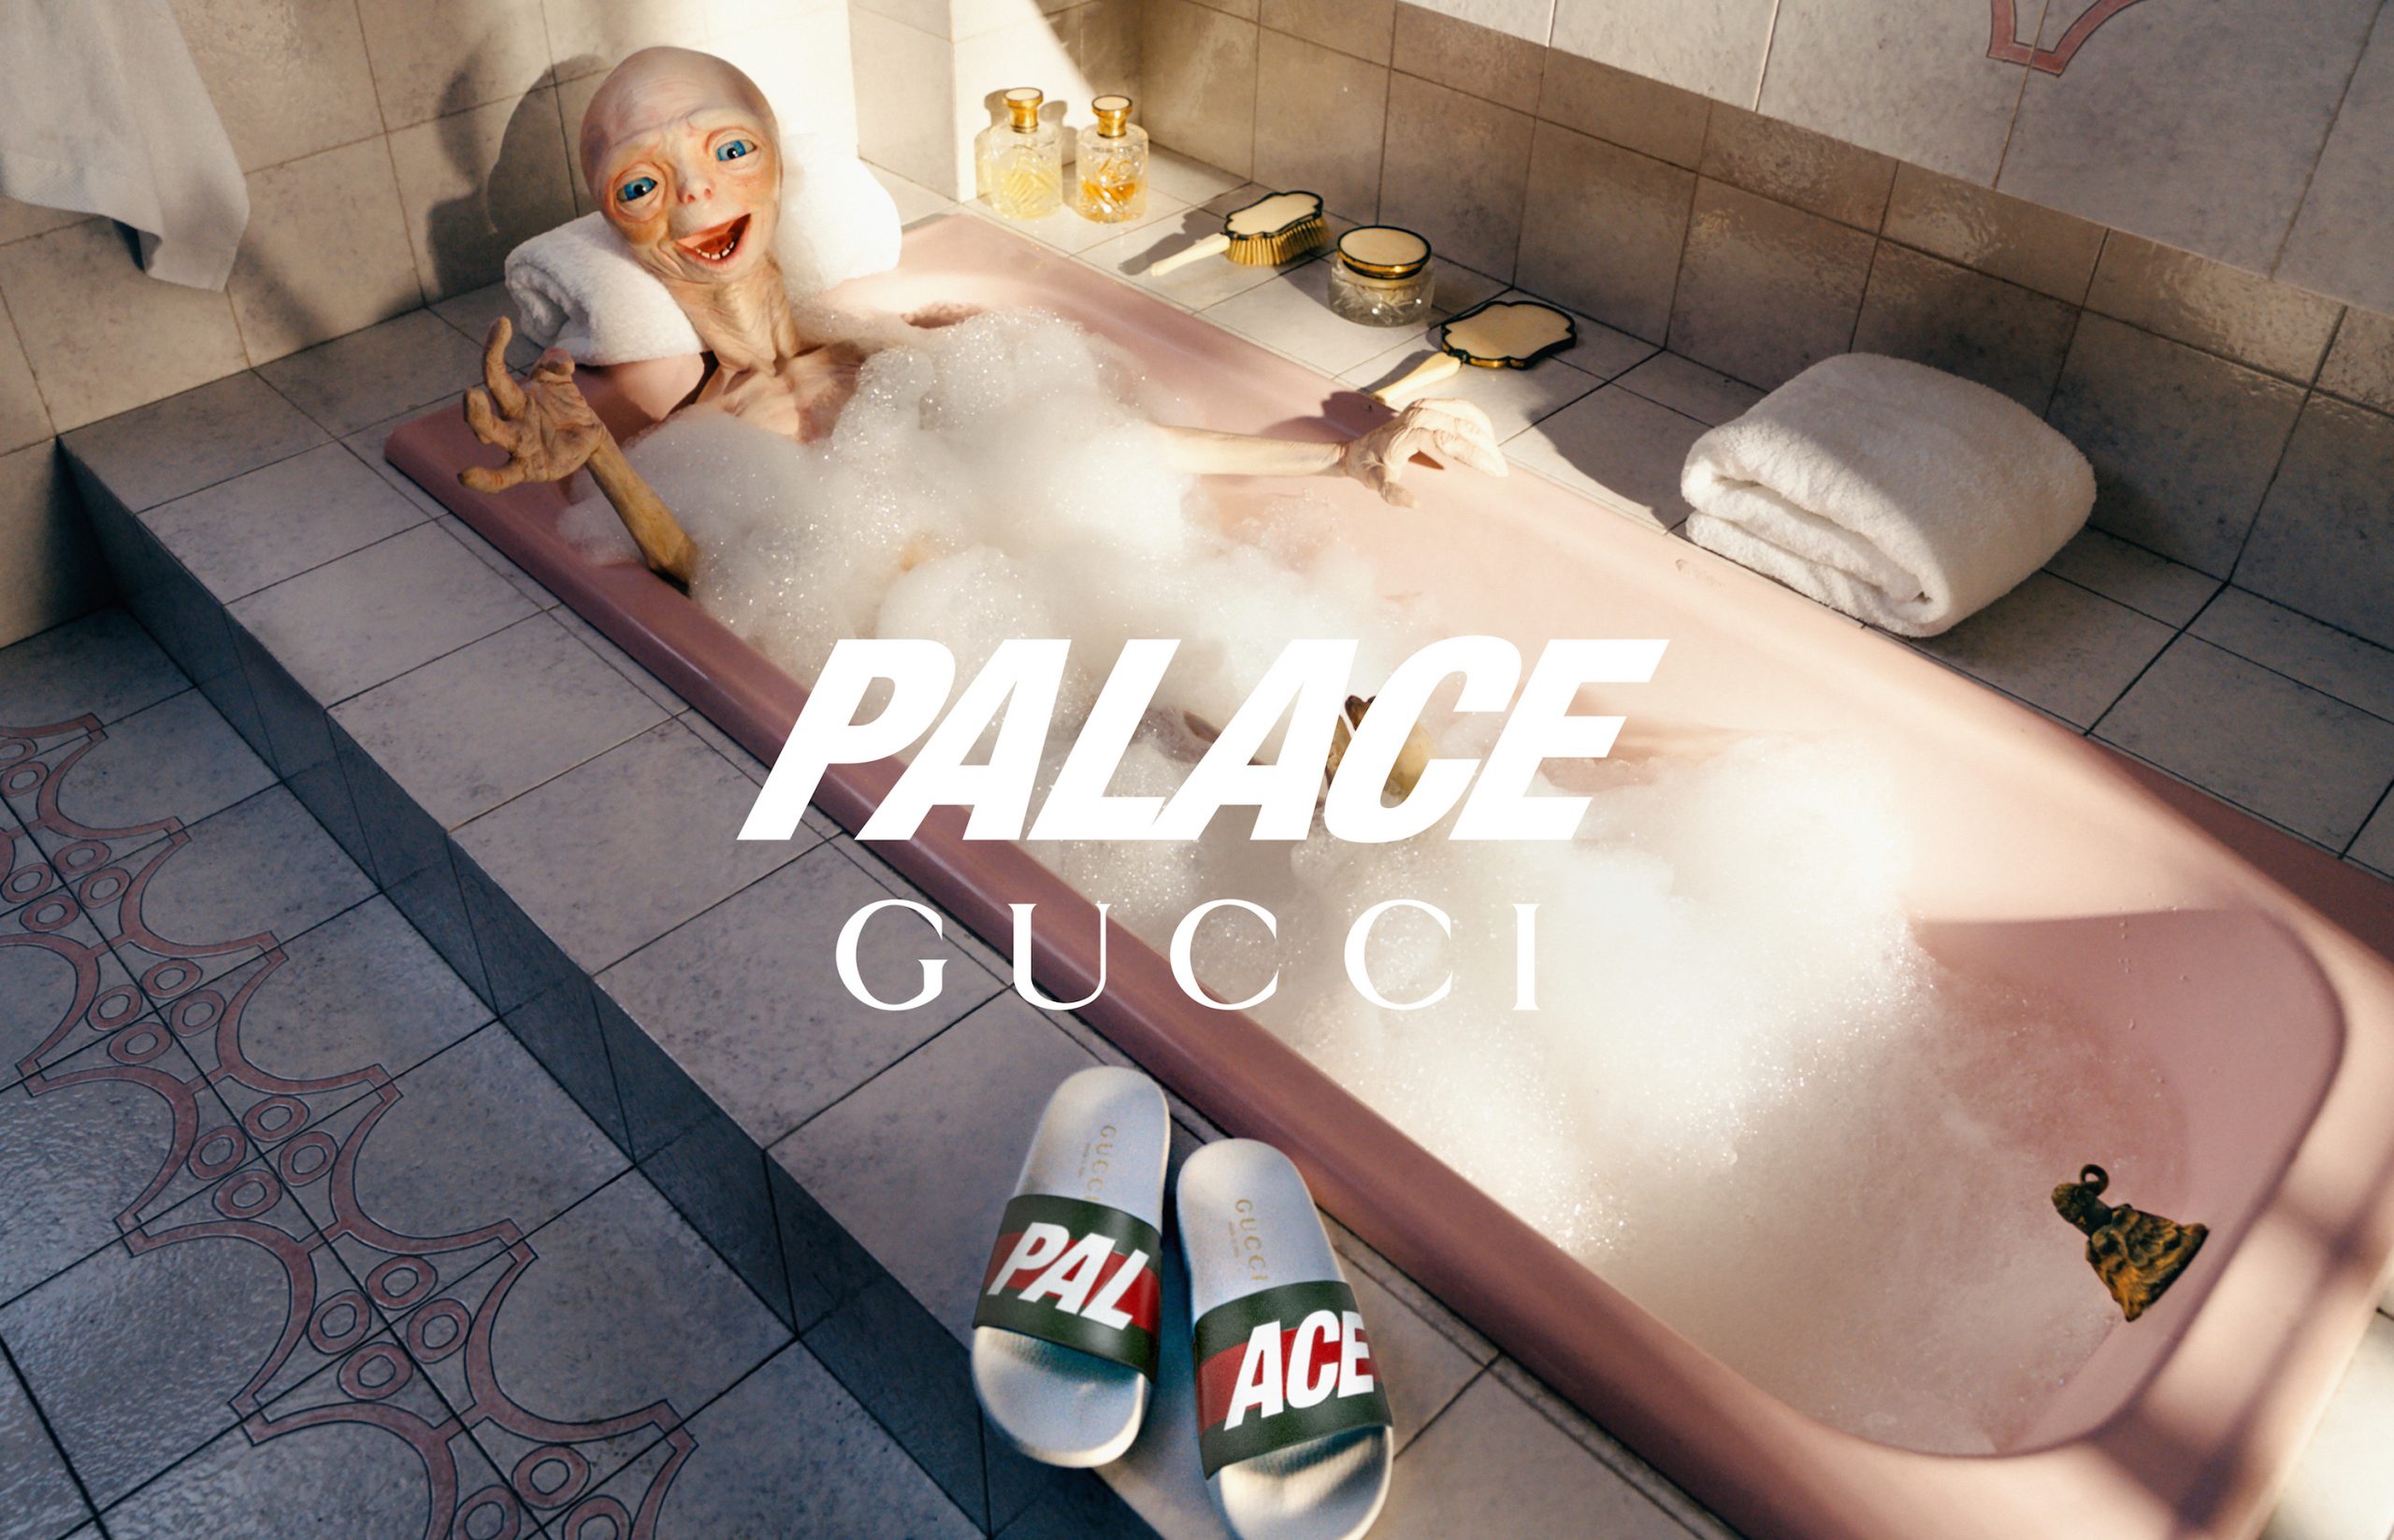 Palace x Gucci Triferg Canvas GG-P Duffle Bag Beige/Ebony